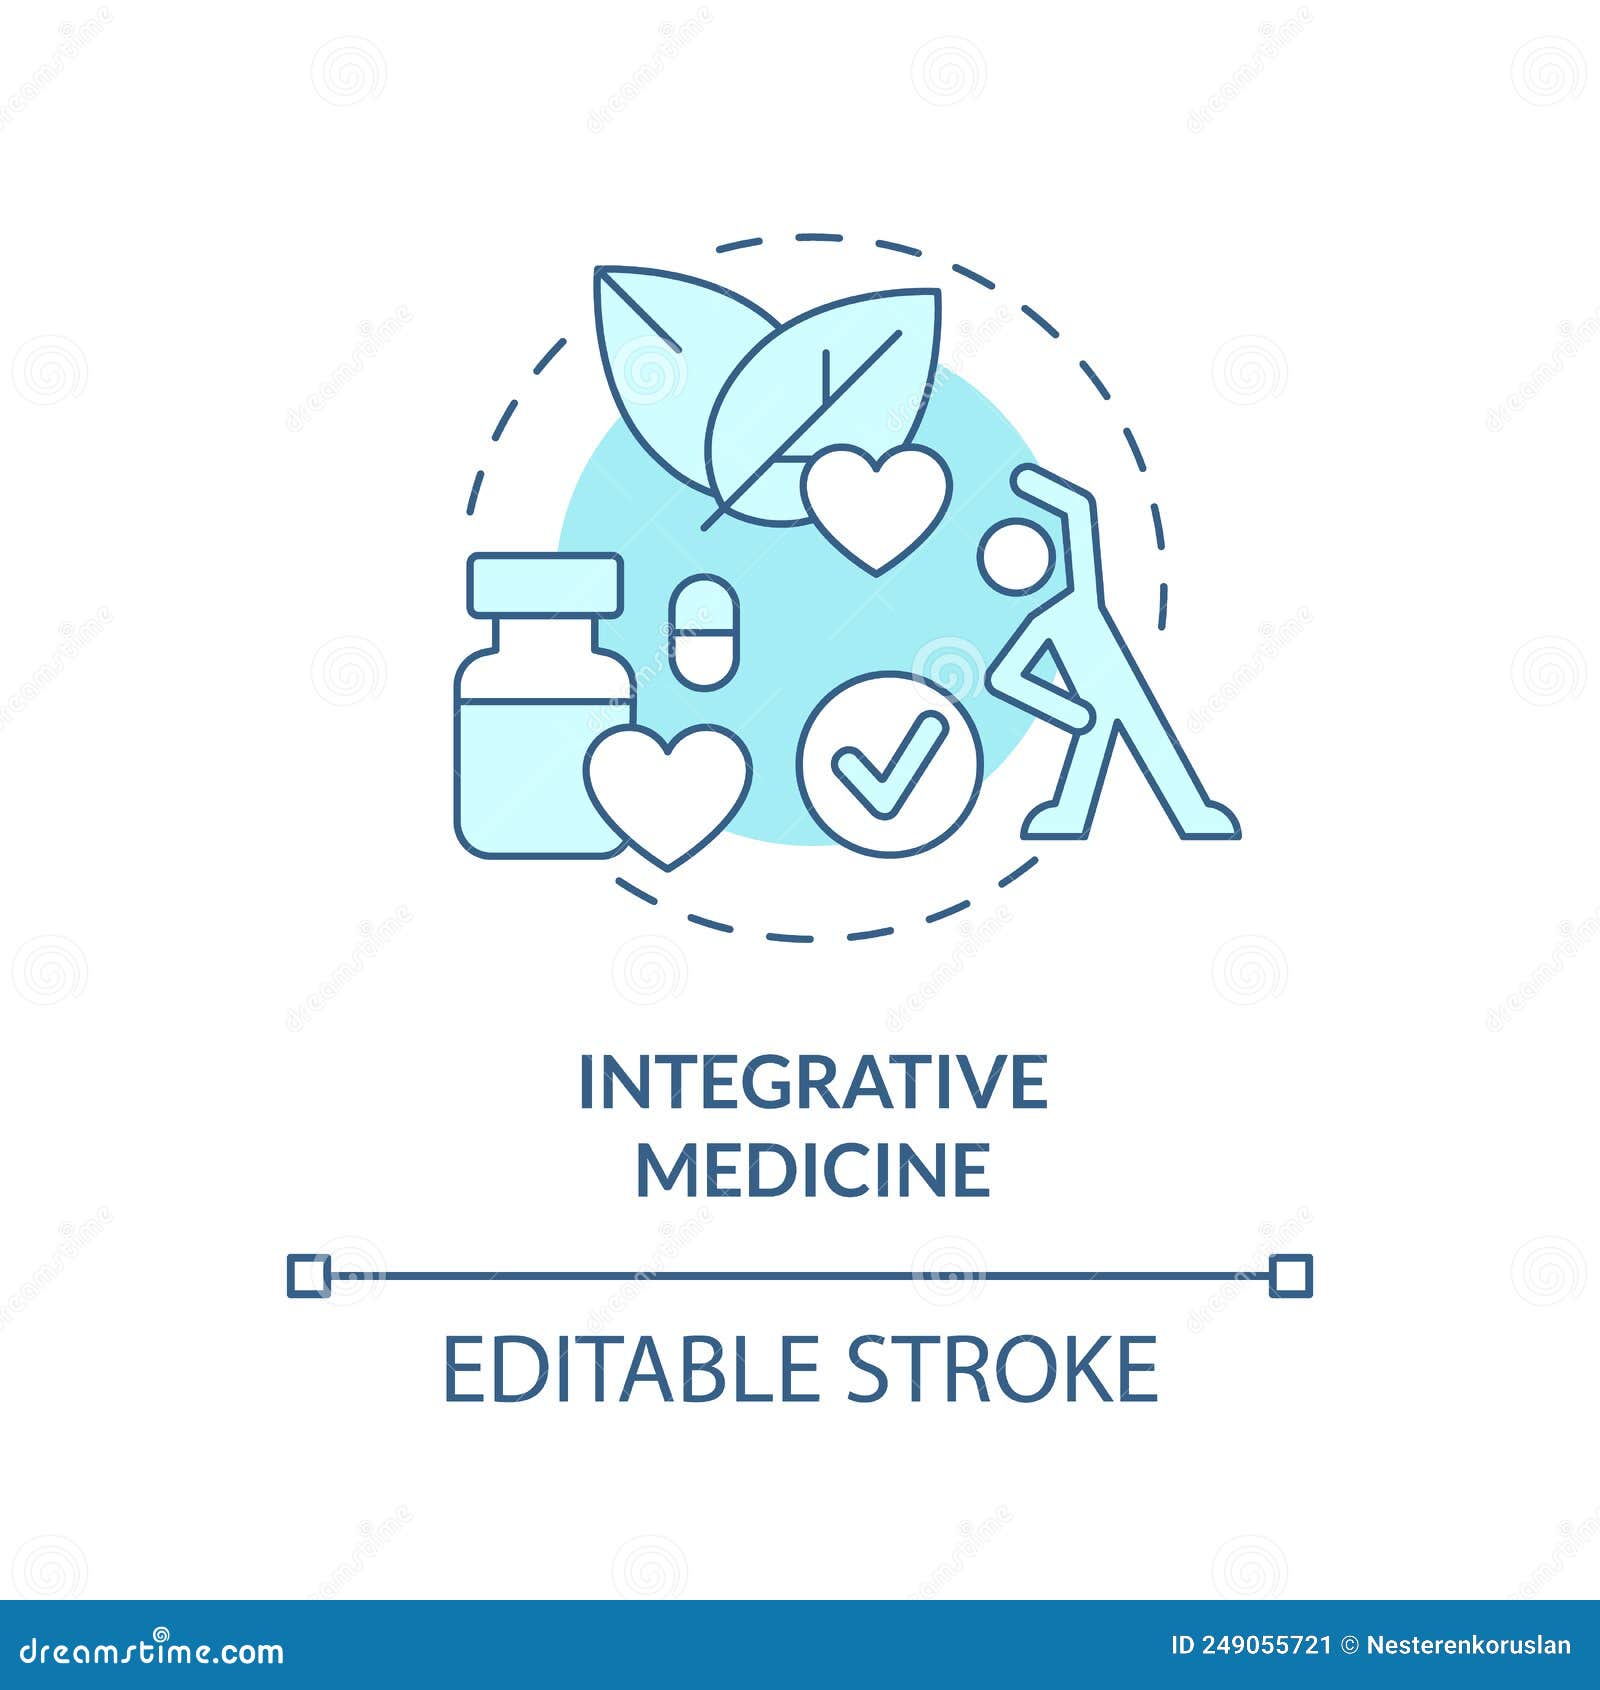 integrative medicine turquoise concept icon